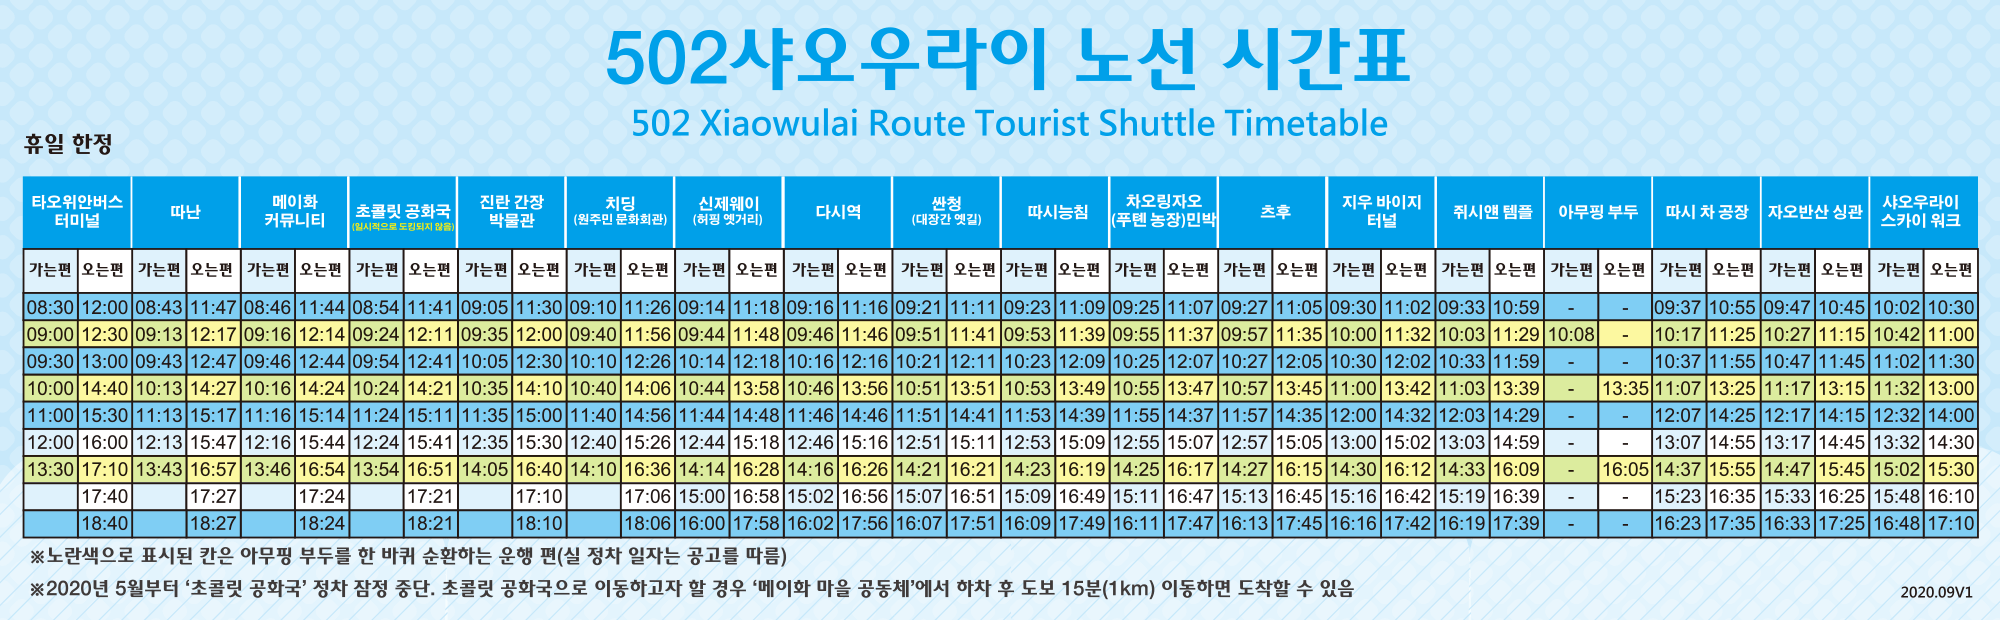 버스 시간표